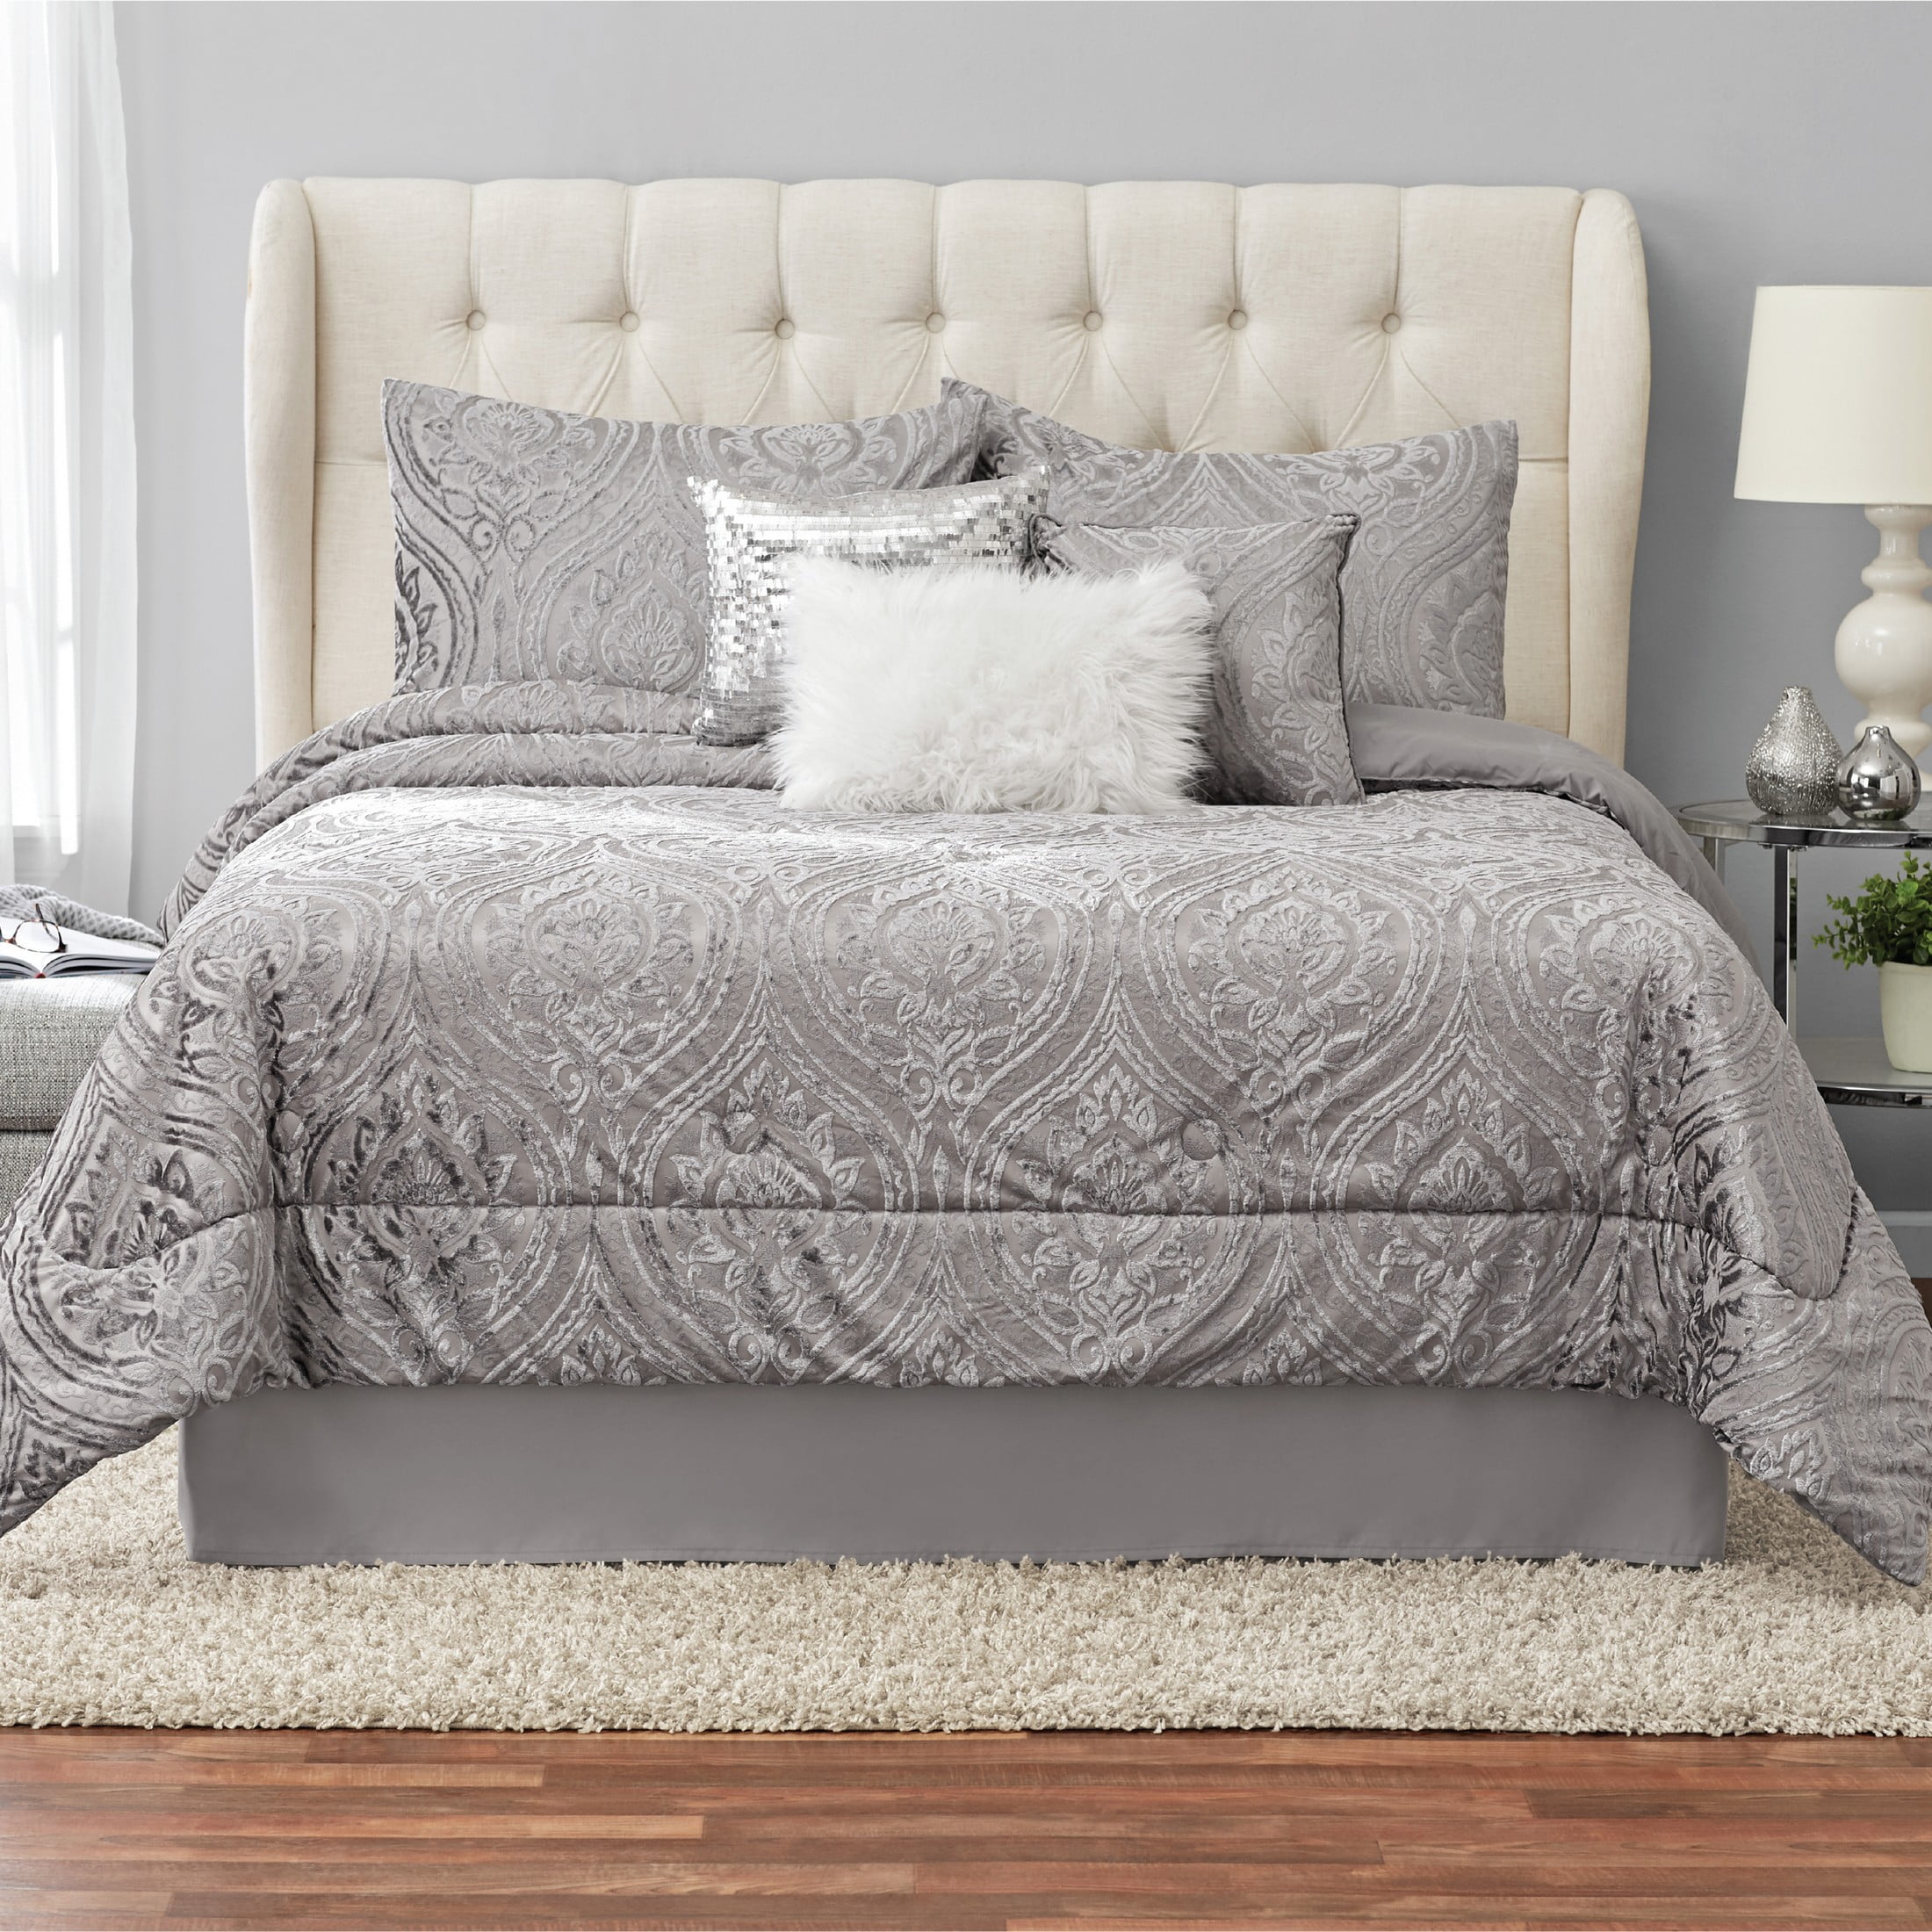 Mainstays 7 Piece Velvet Comforter Set, Grey King Size Bedroom Comforter Set